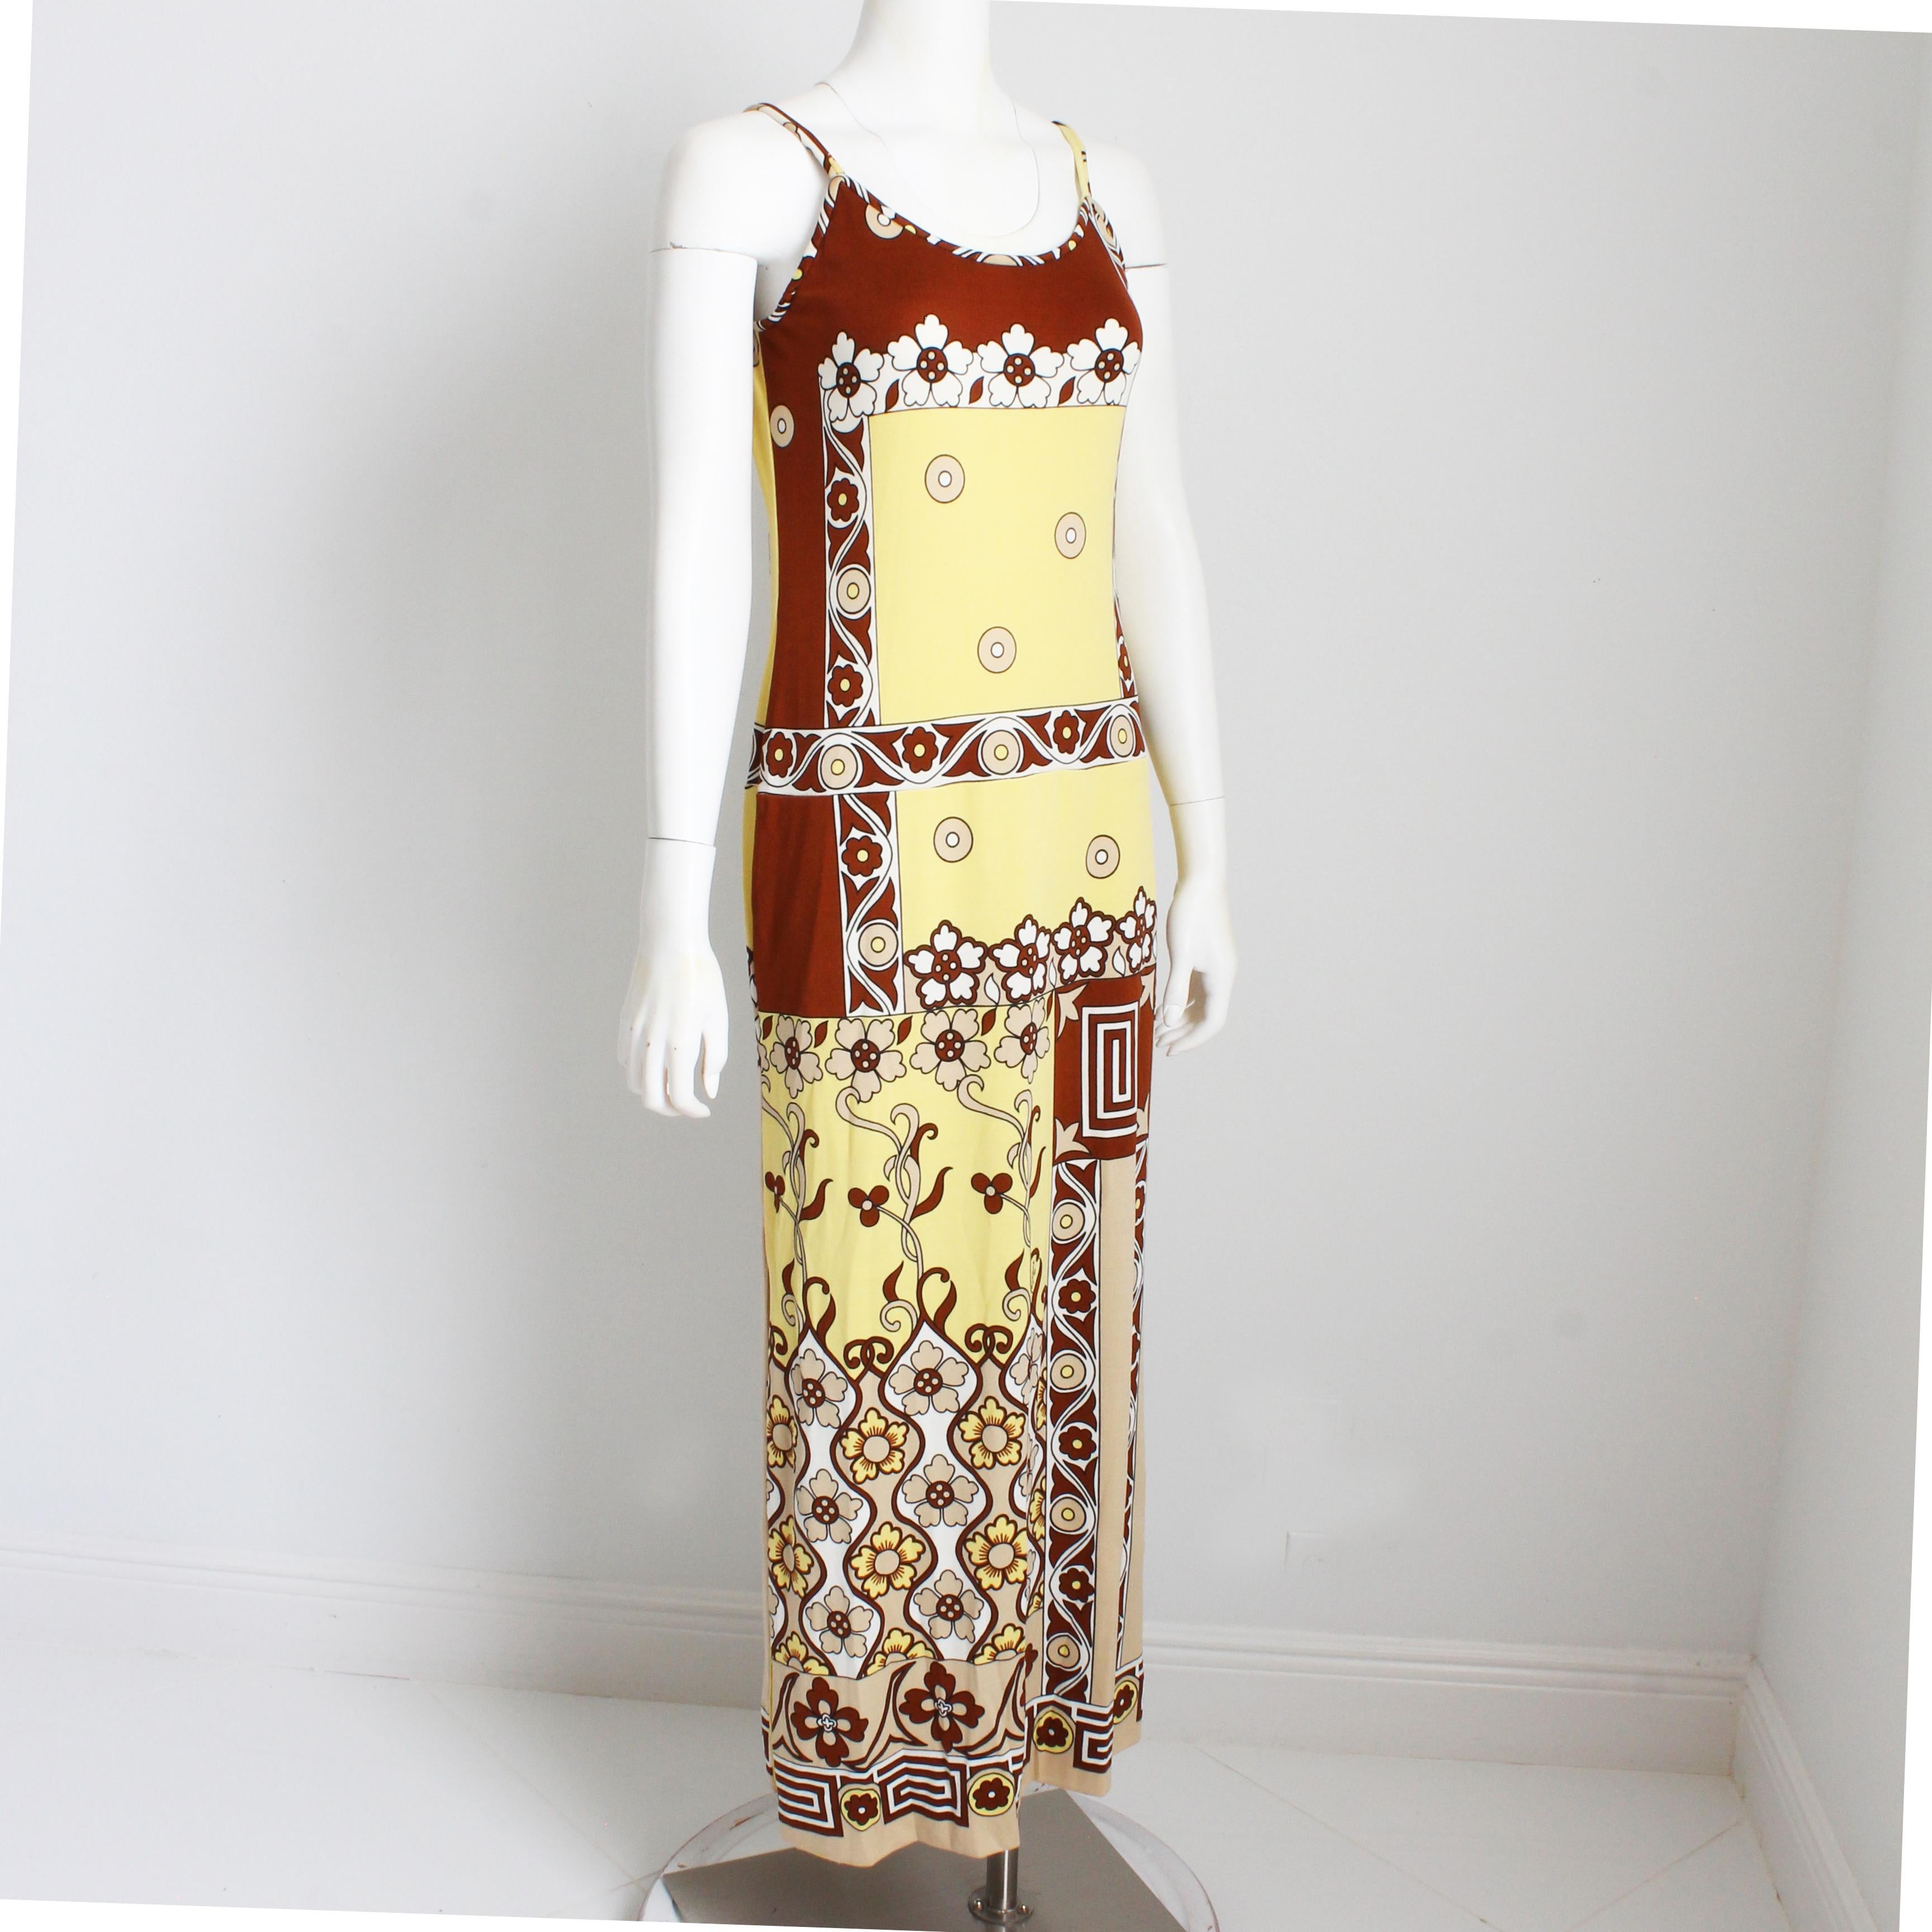 Robe longue vintage, fabriquée par Paganne et dessinée par Gene Berk, très probablement au début des années 70. Confectionné en jersey mélangé de poly/nylon, il présente un imprimé abstrait audacieux dans des tons de marron, de tan et de jaune, des